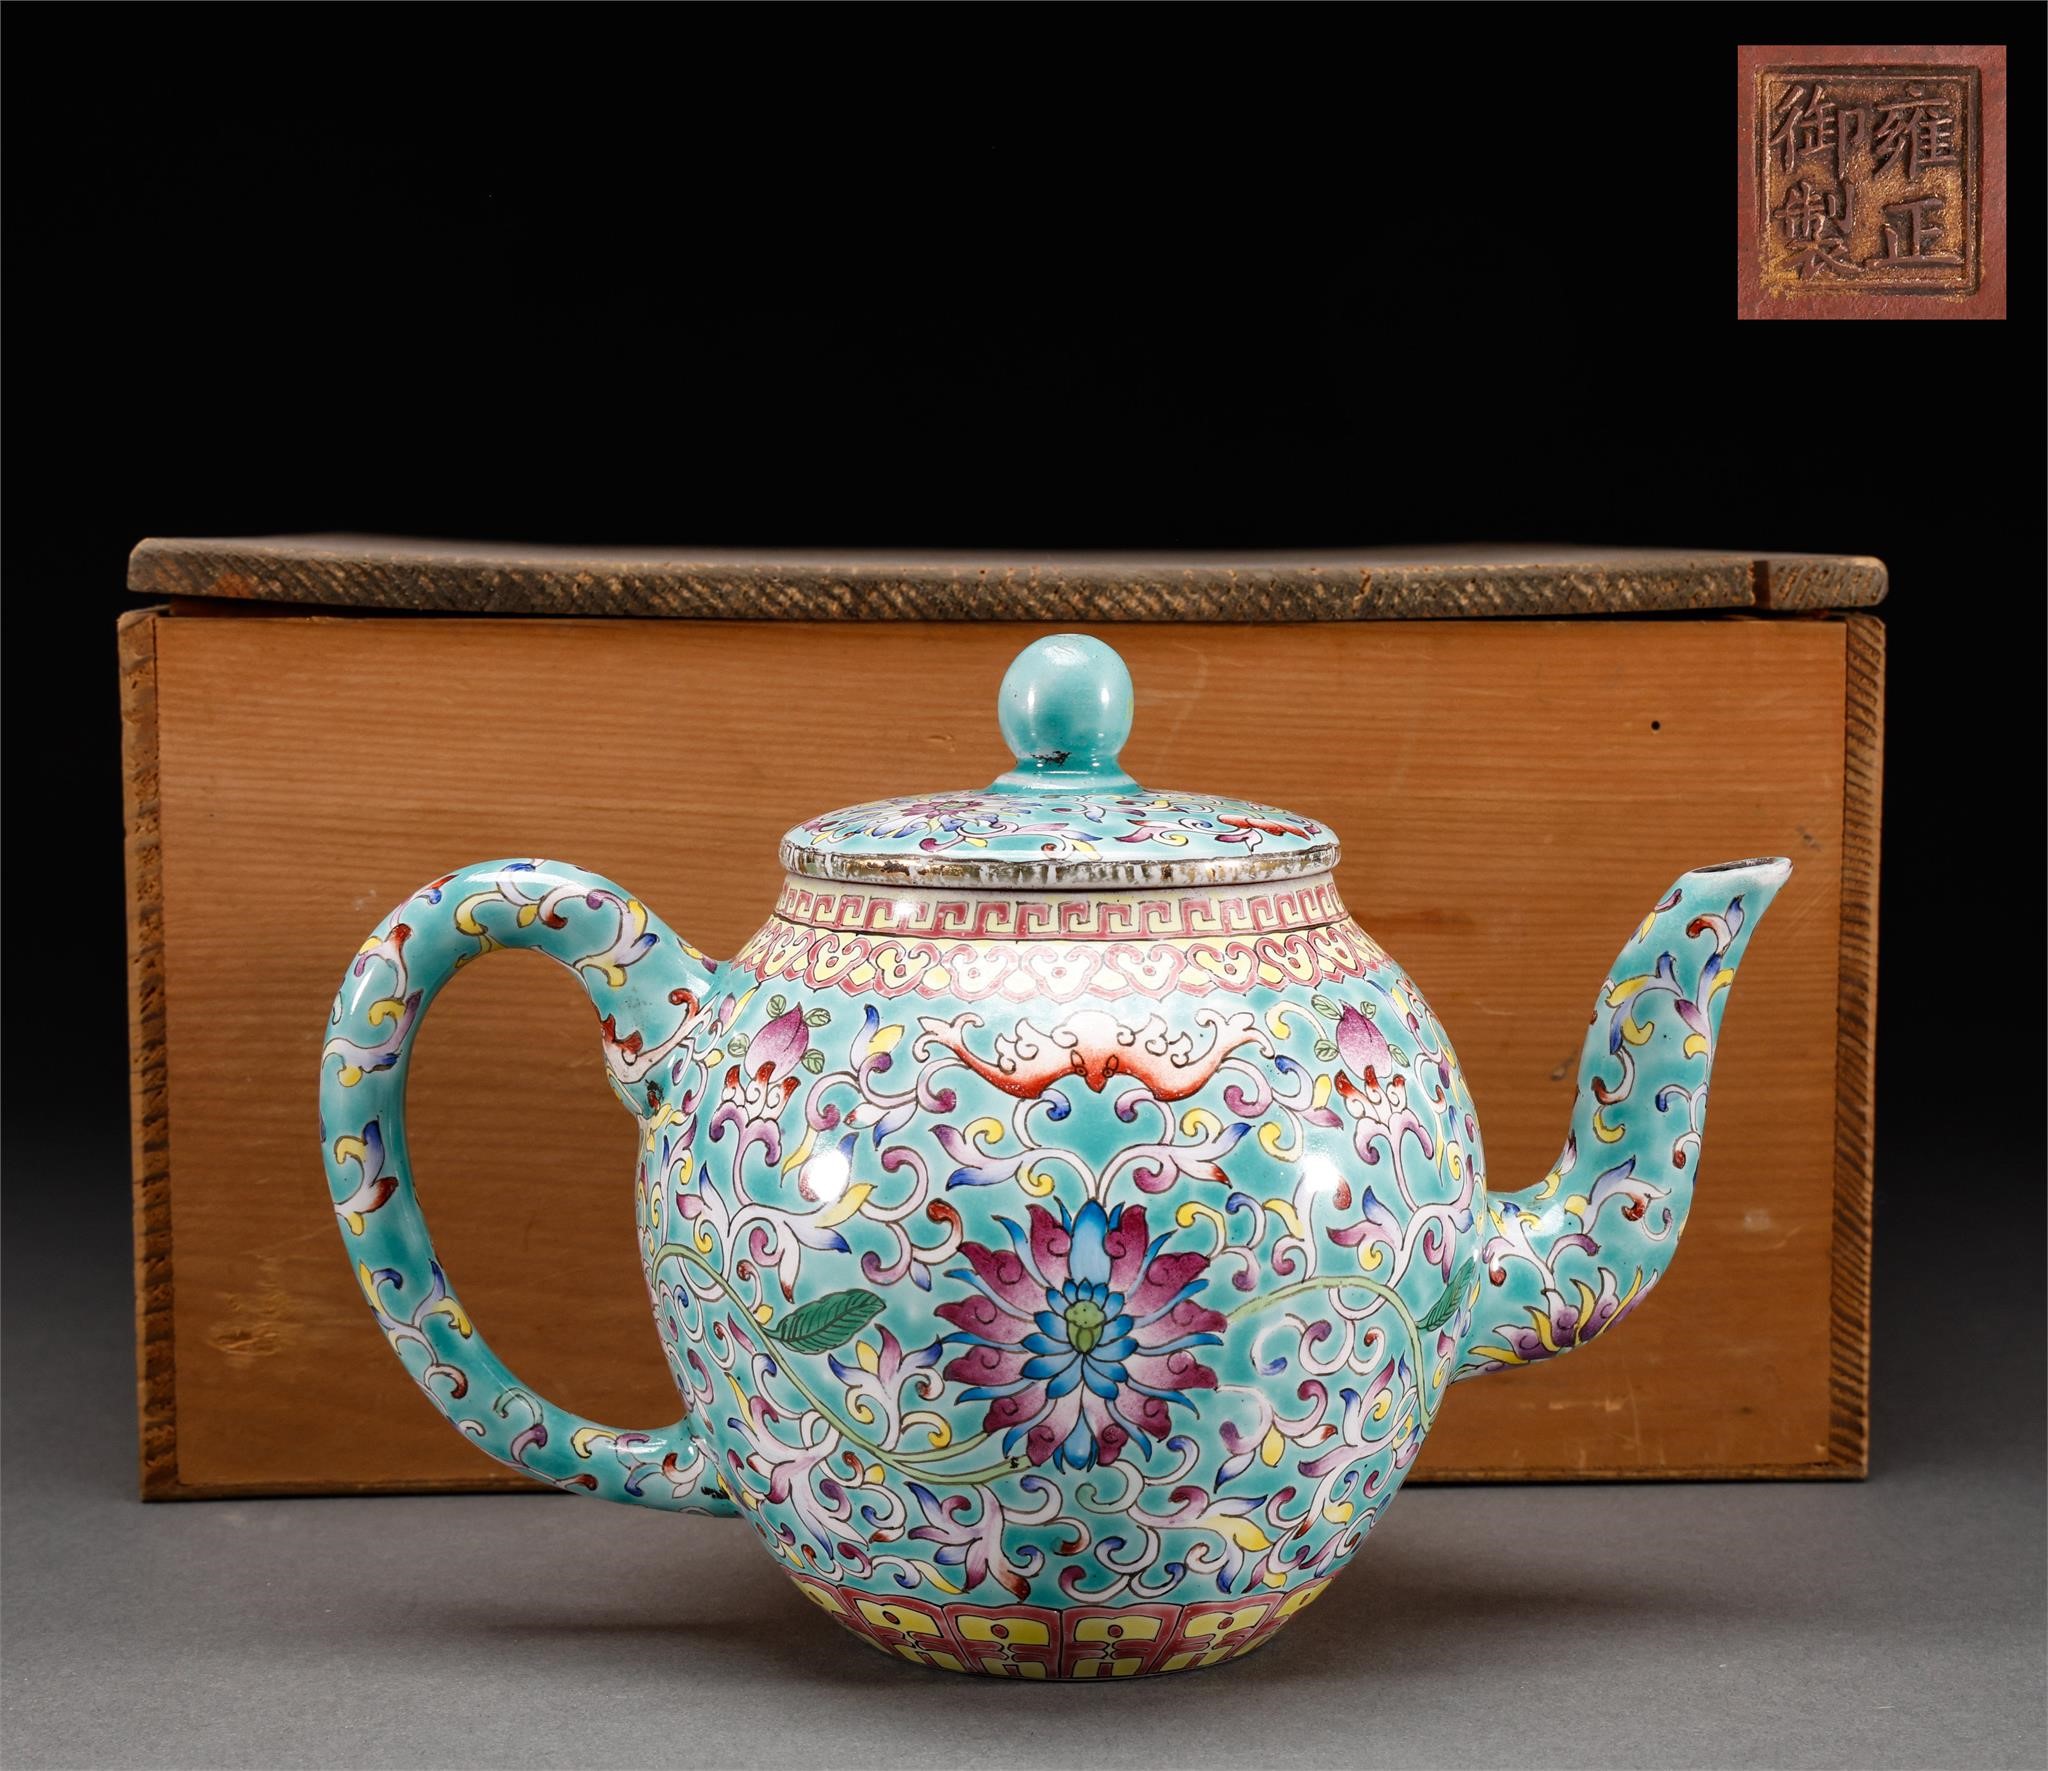 Purple sand flower pattern pot in Qing Dynasty